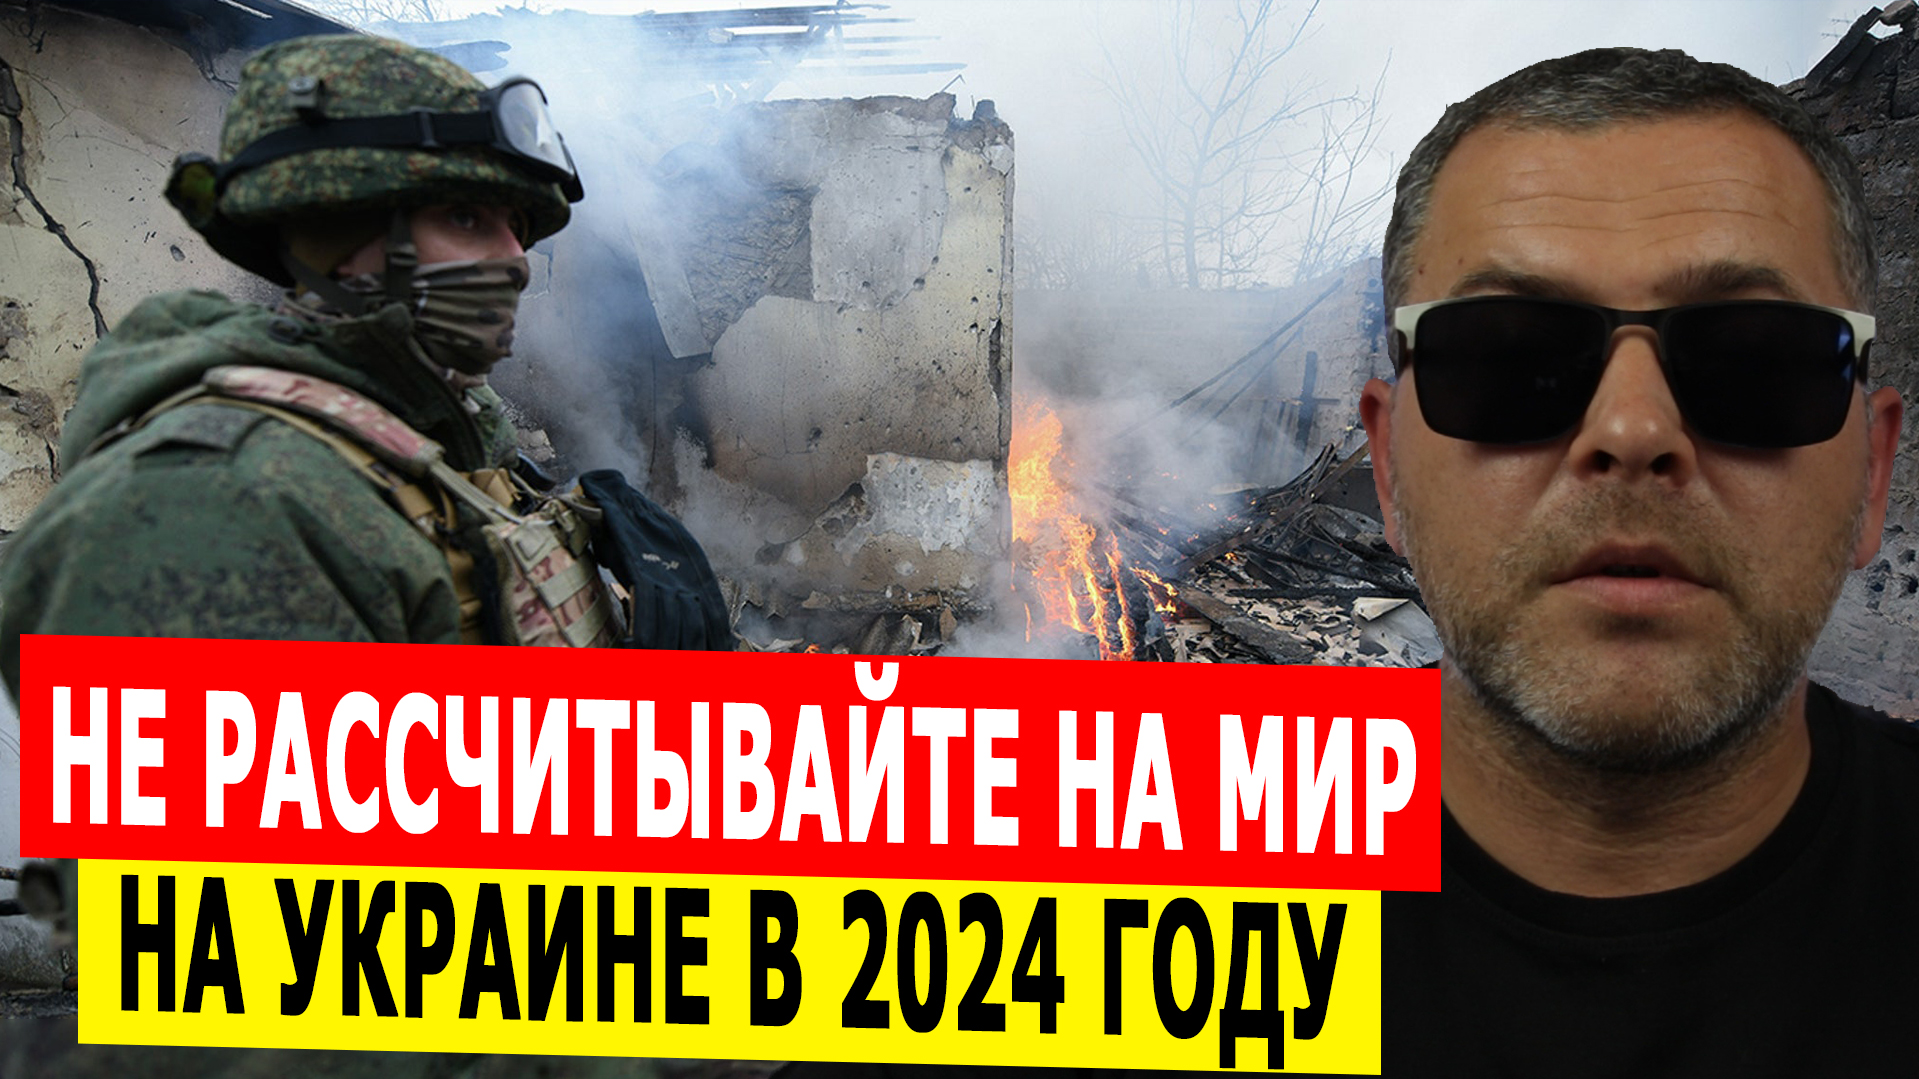 Мир на Украине в 2024 году. Даже не рассчитывайте